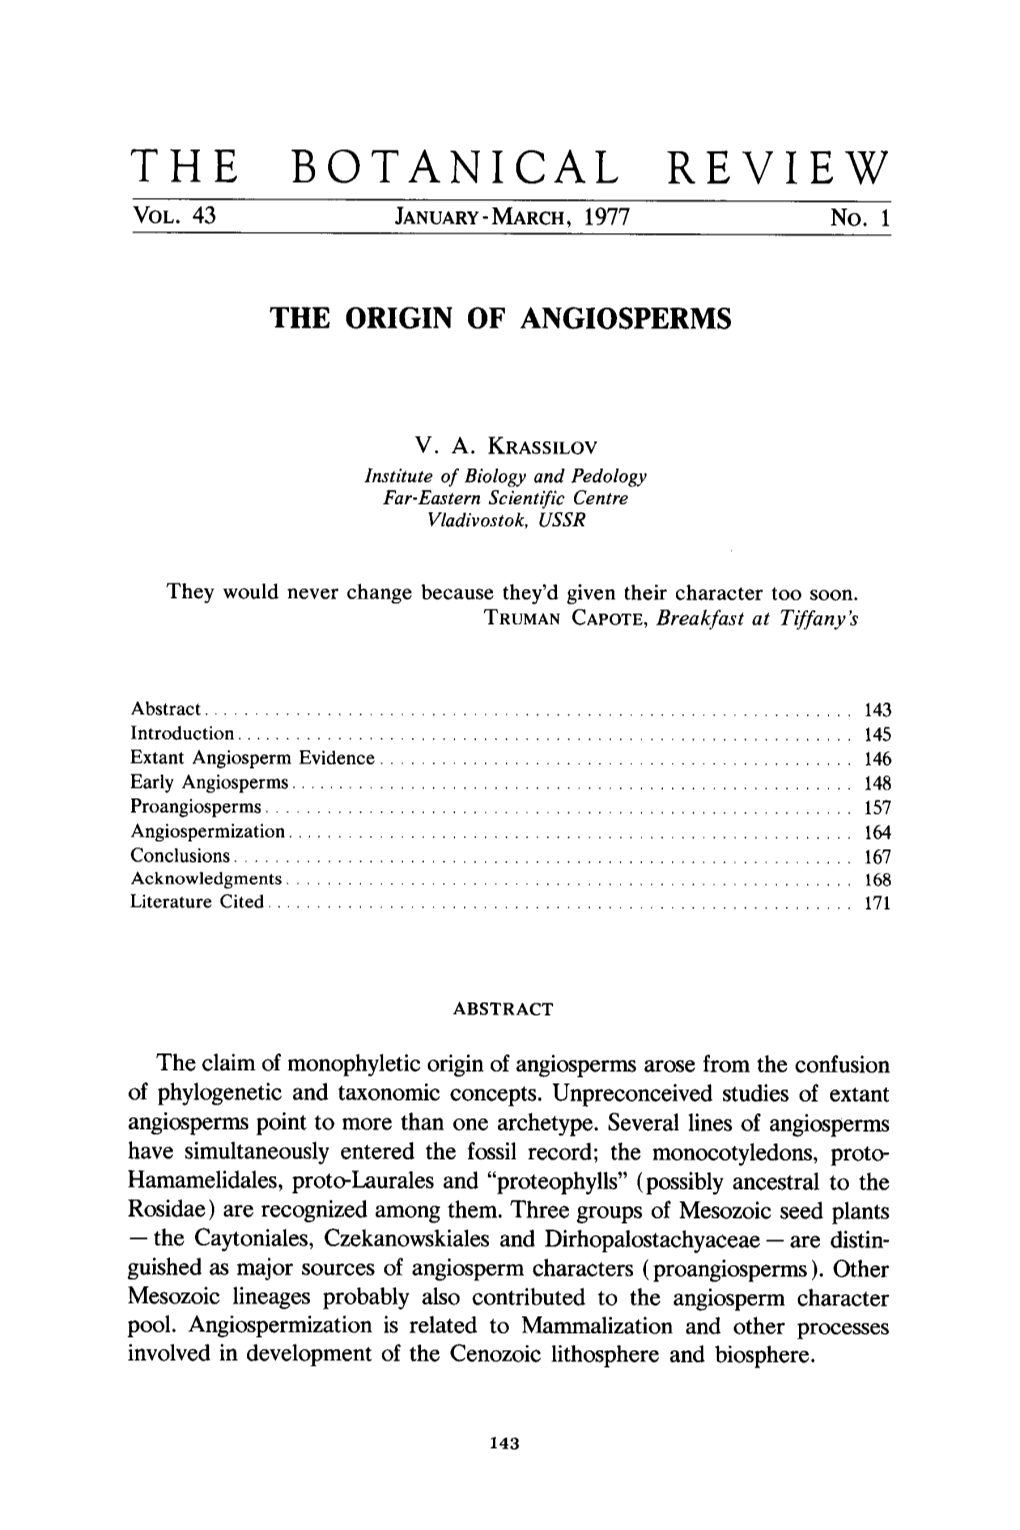 The Origin of Angiosperms